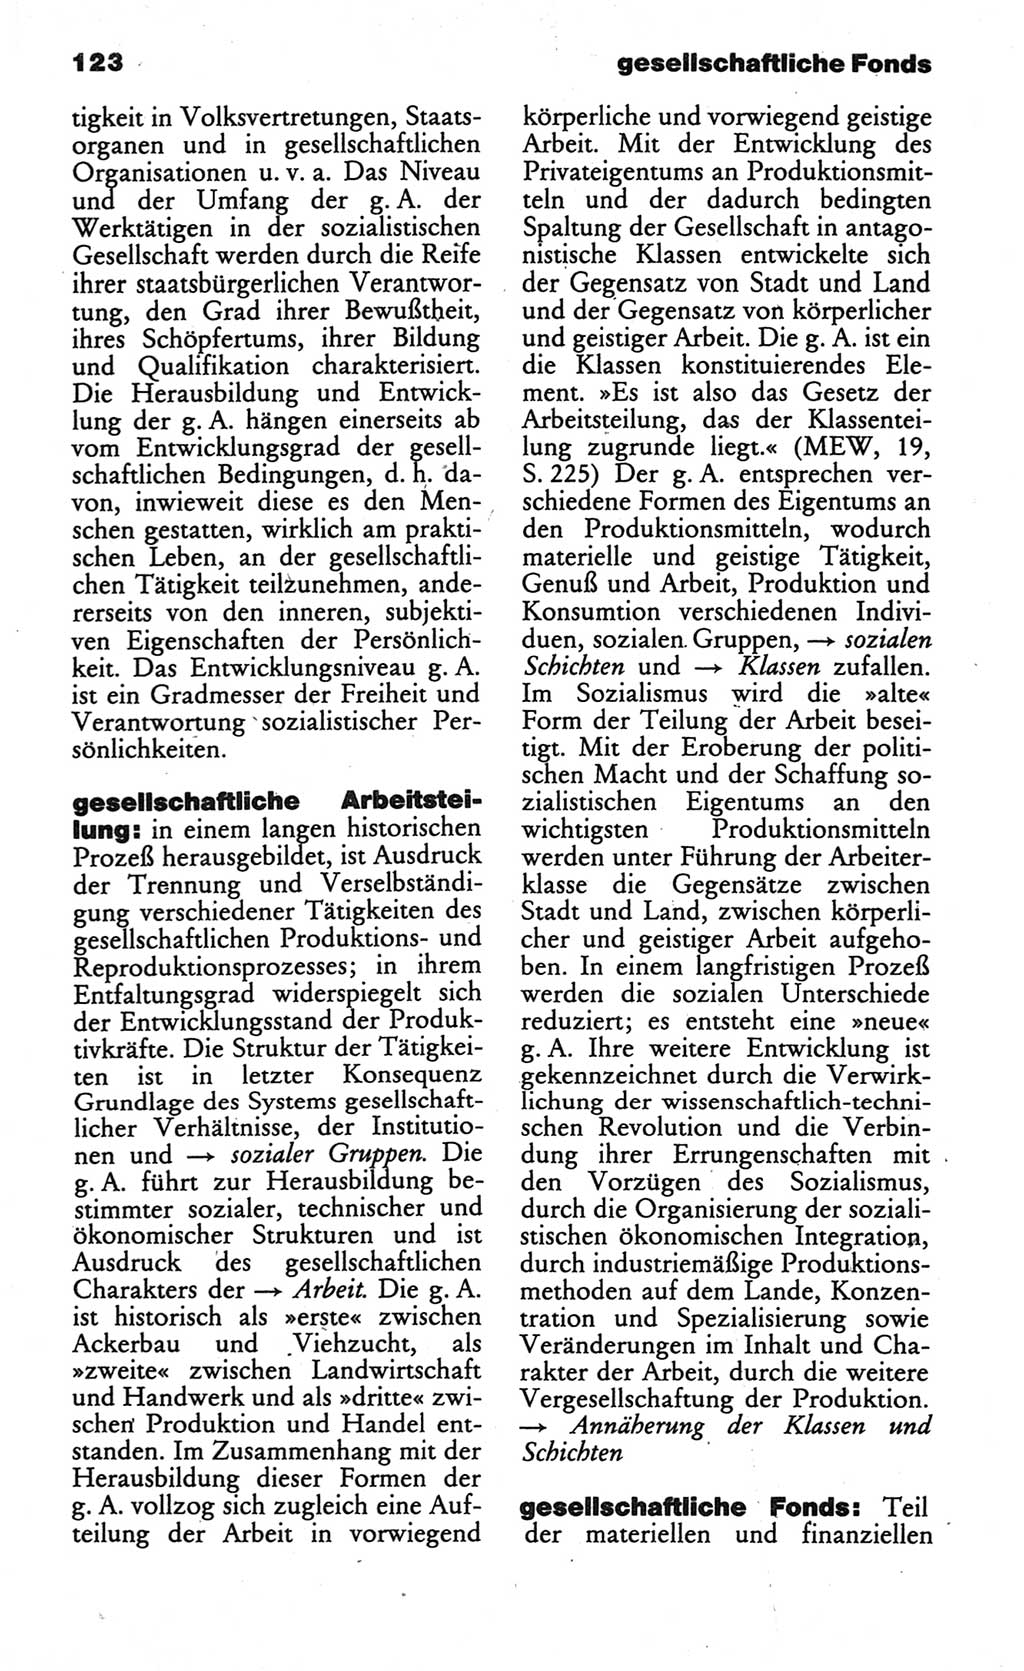 Wörterbuch des wissenschaftlichen Kommunismus [Deutsche Demokratische Republik (DDR)] 1984, Seite 123 (Wb. wiss. Komm. DDR 1984, S. 123)